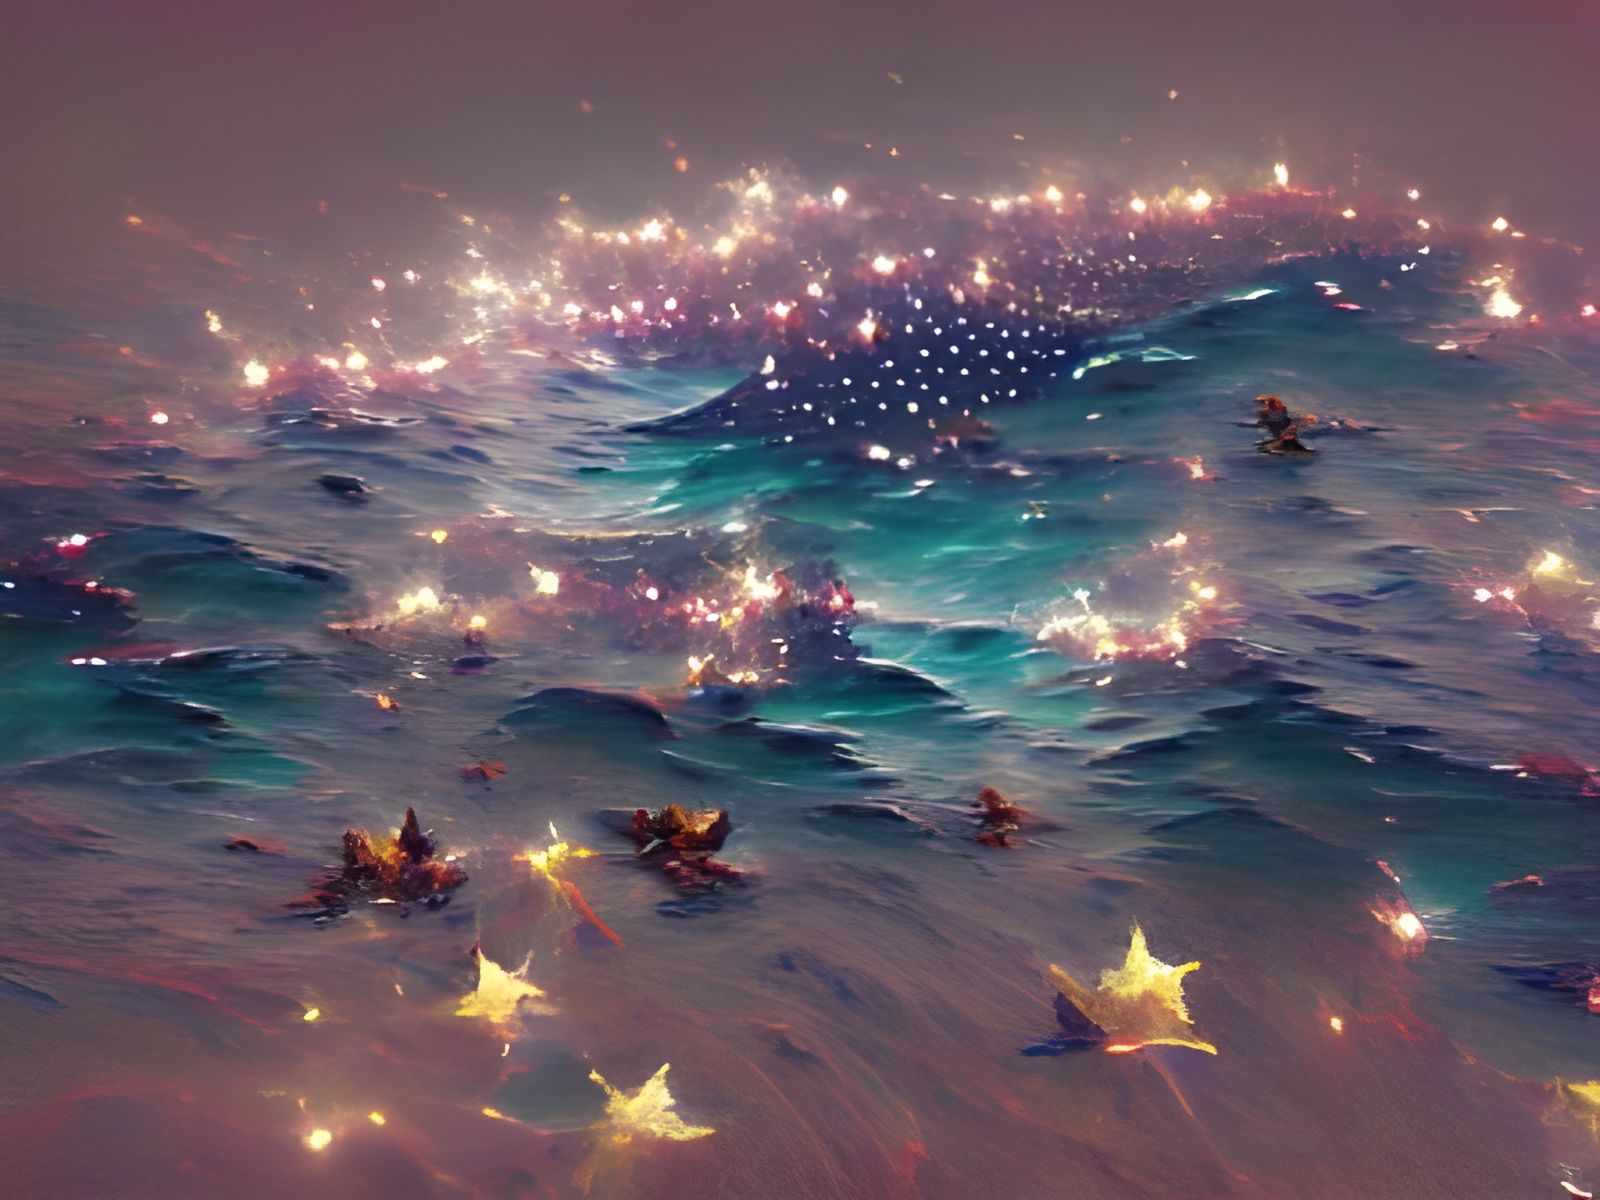 Sea of Stars